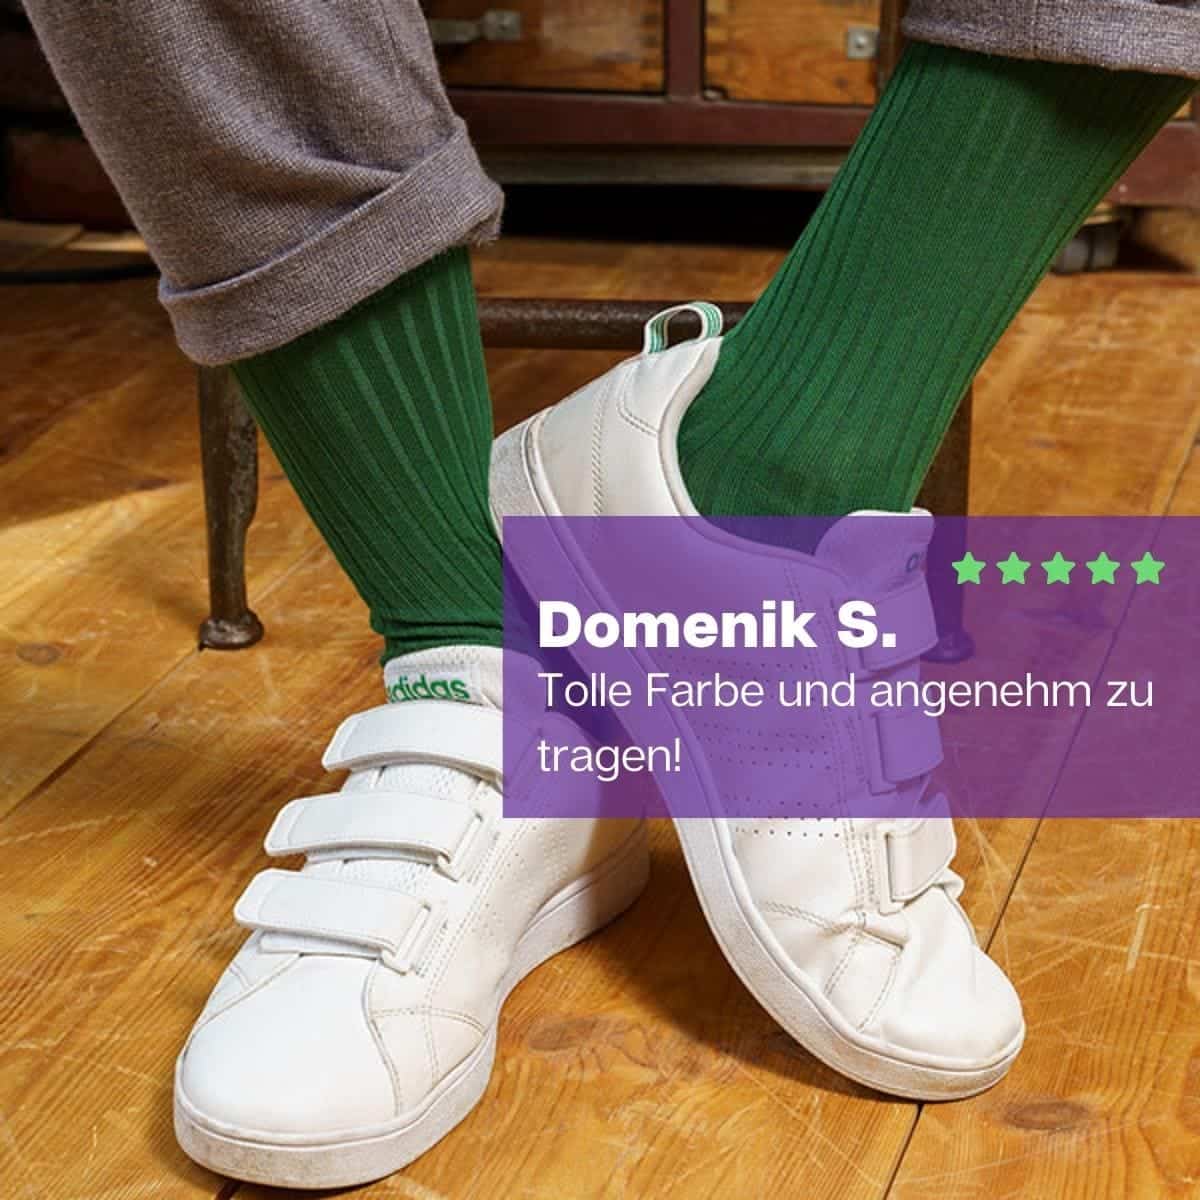 Erstklassige grüne Luxus-Socken von PATRON SOCKS mit weißen Sneaker Schuhe von Adidas.